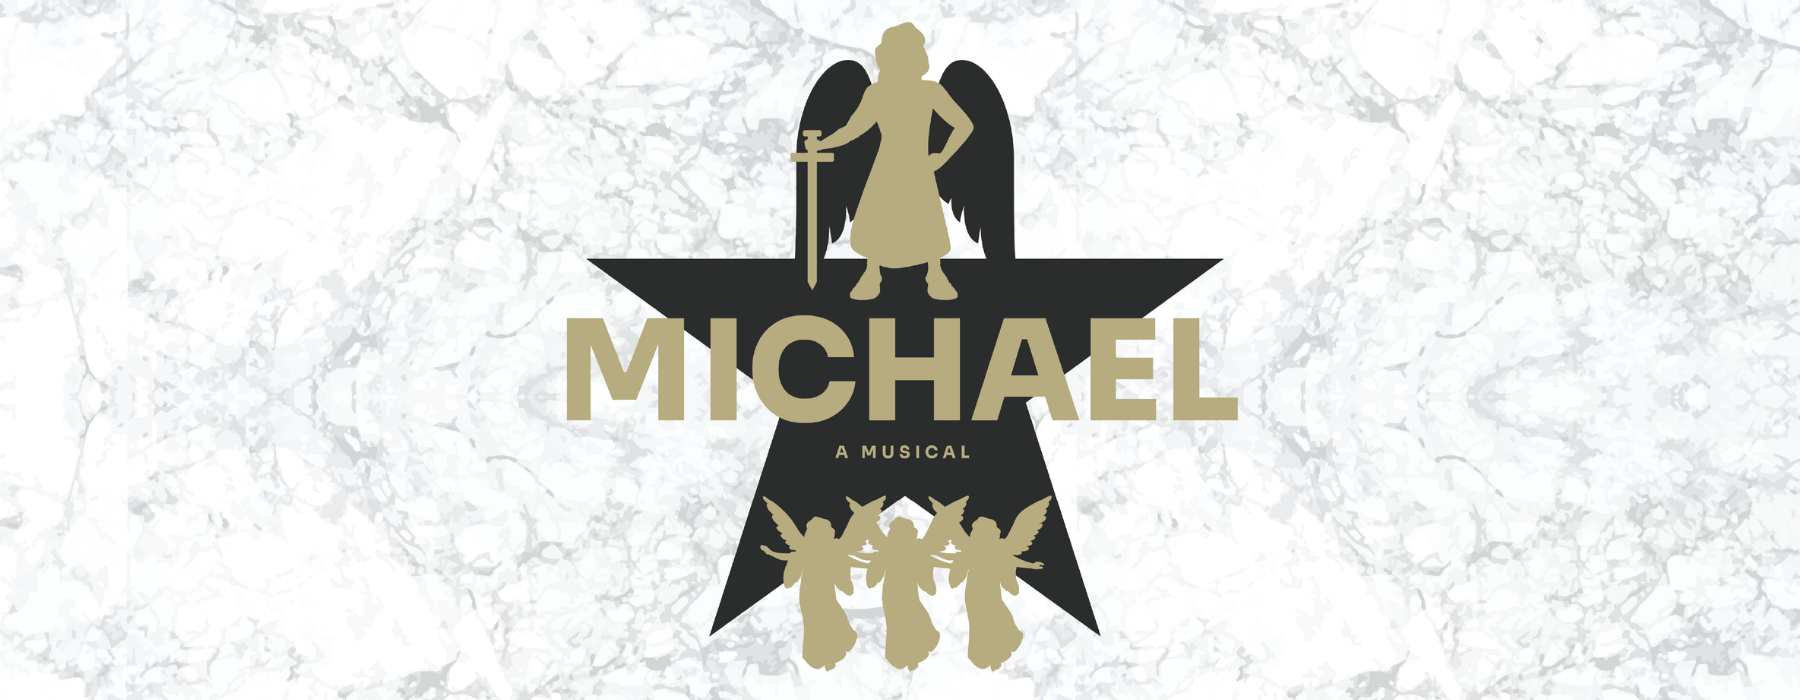 michael-a-musical-2_354